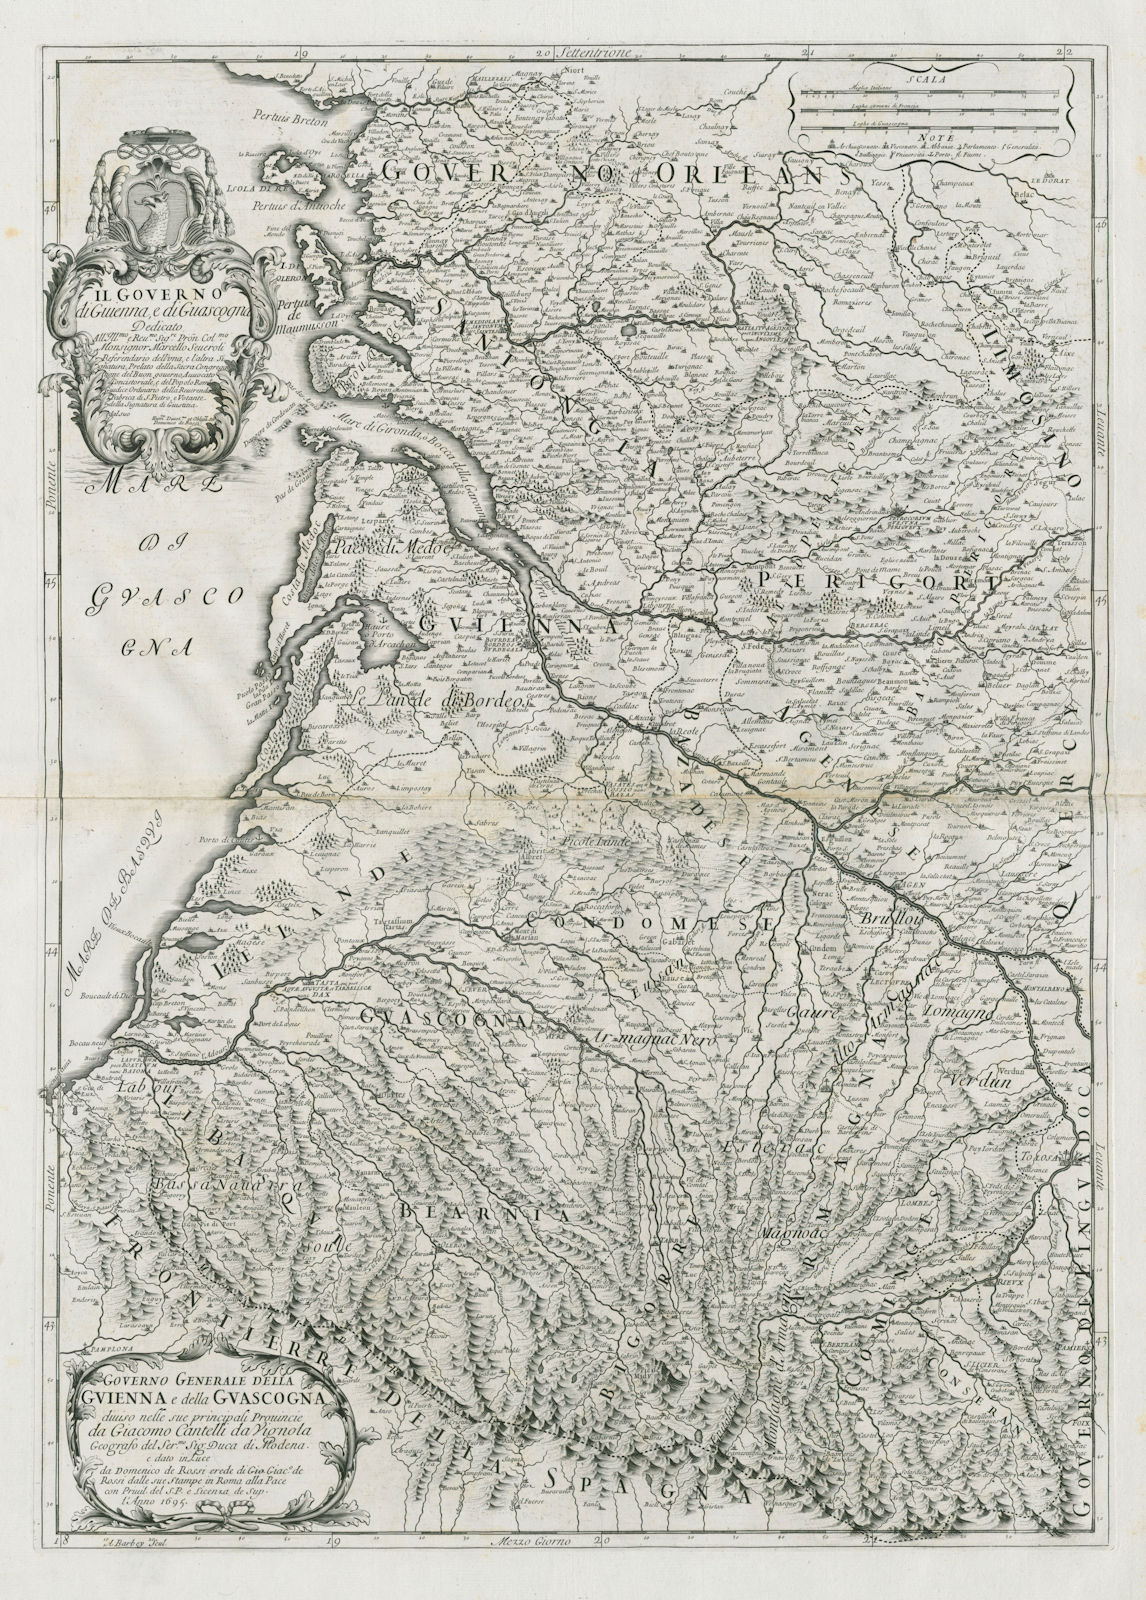 Associate Product Governo Generale della Guienna e… Guascogna. Aquitaine. ROSSI /CANTELLI 1695 map